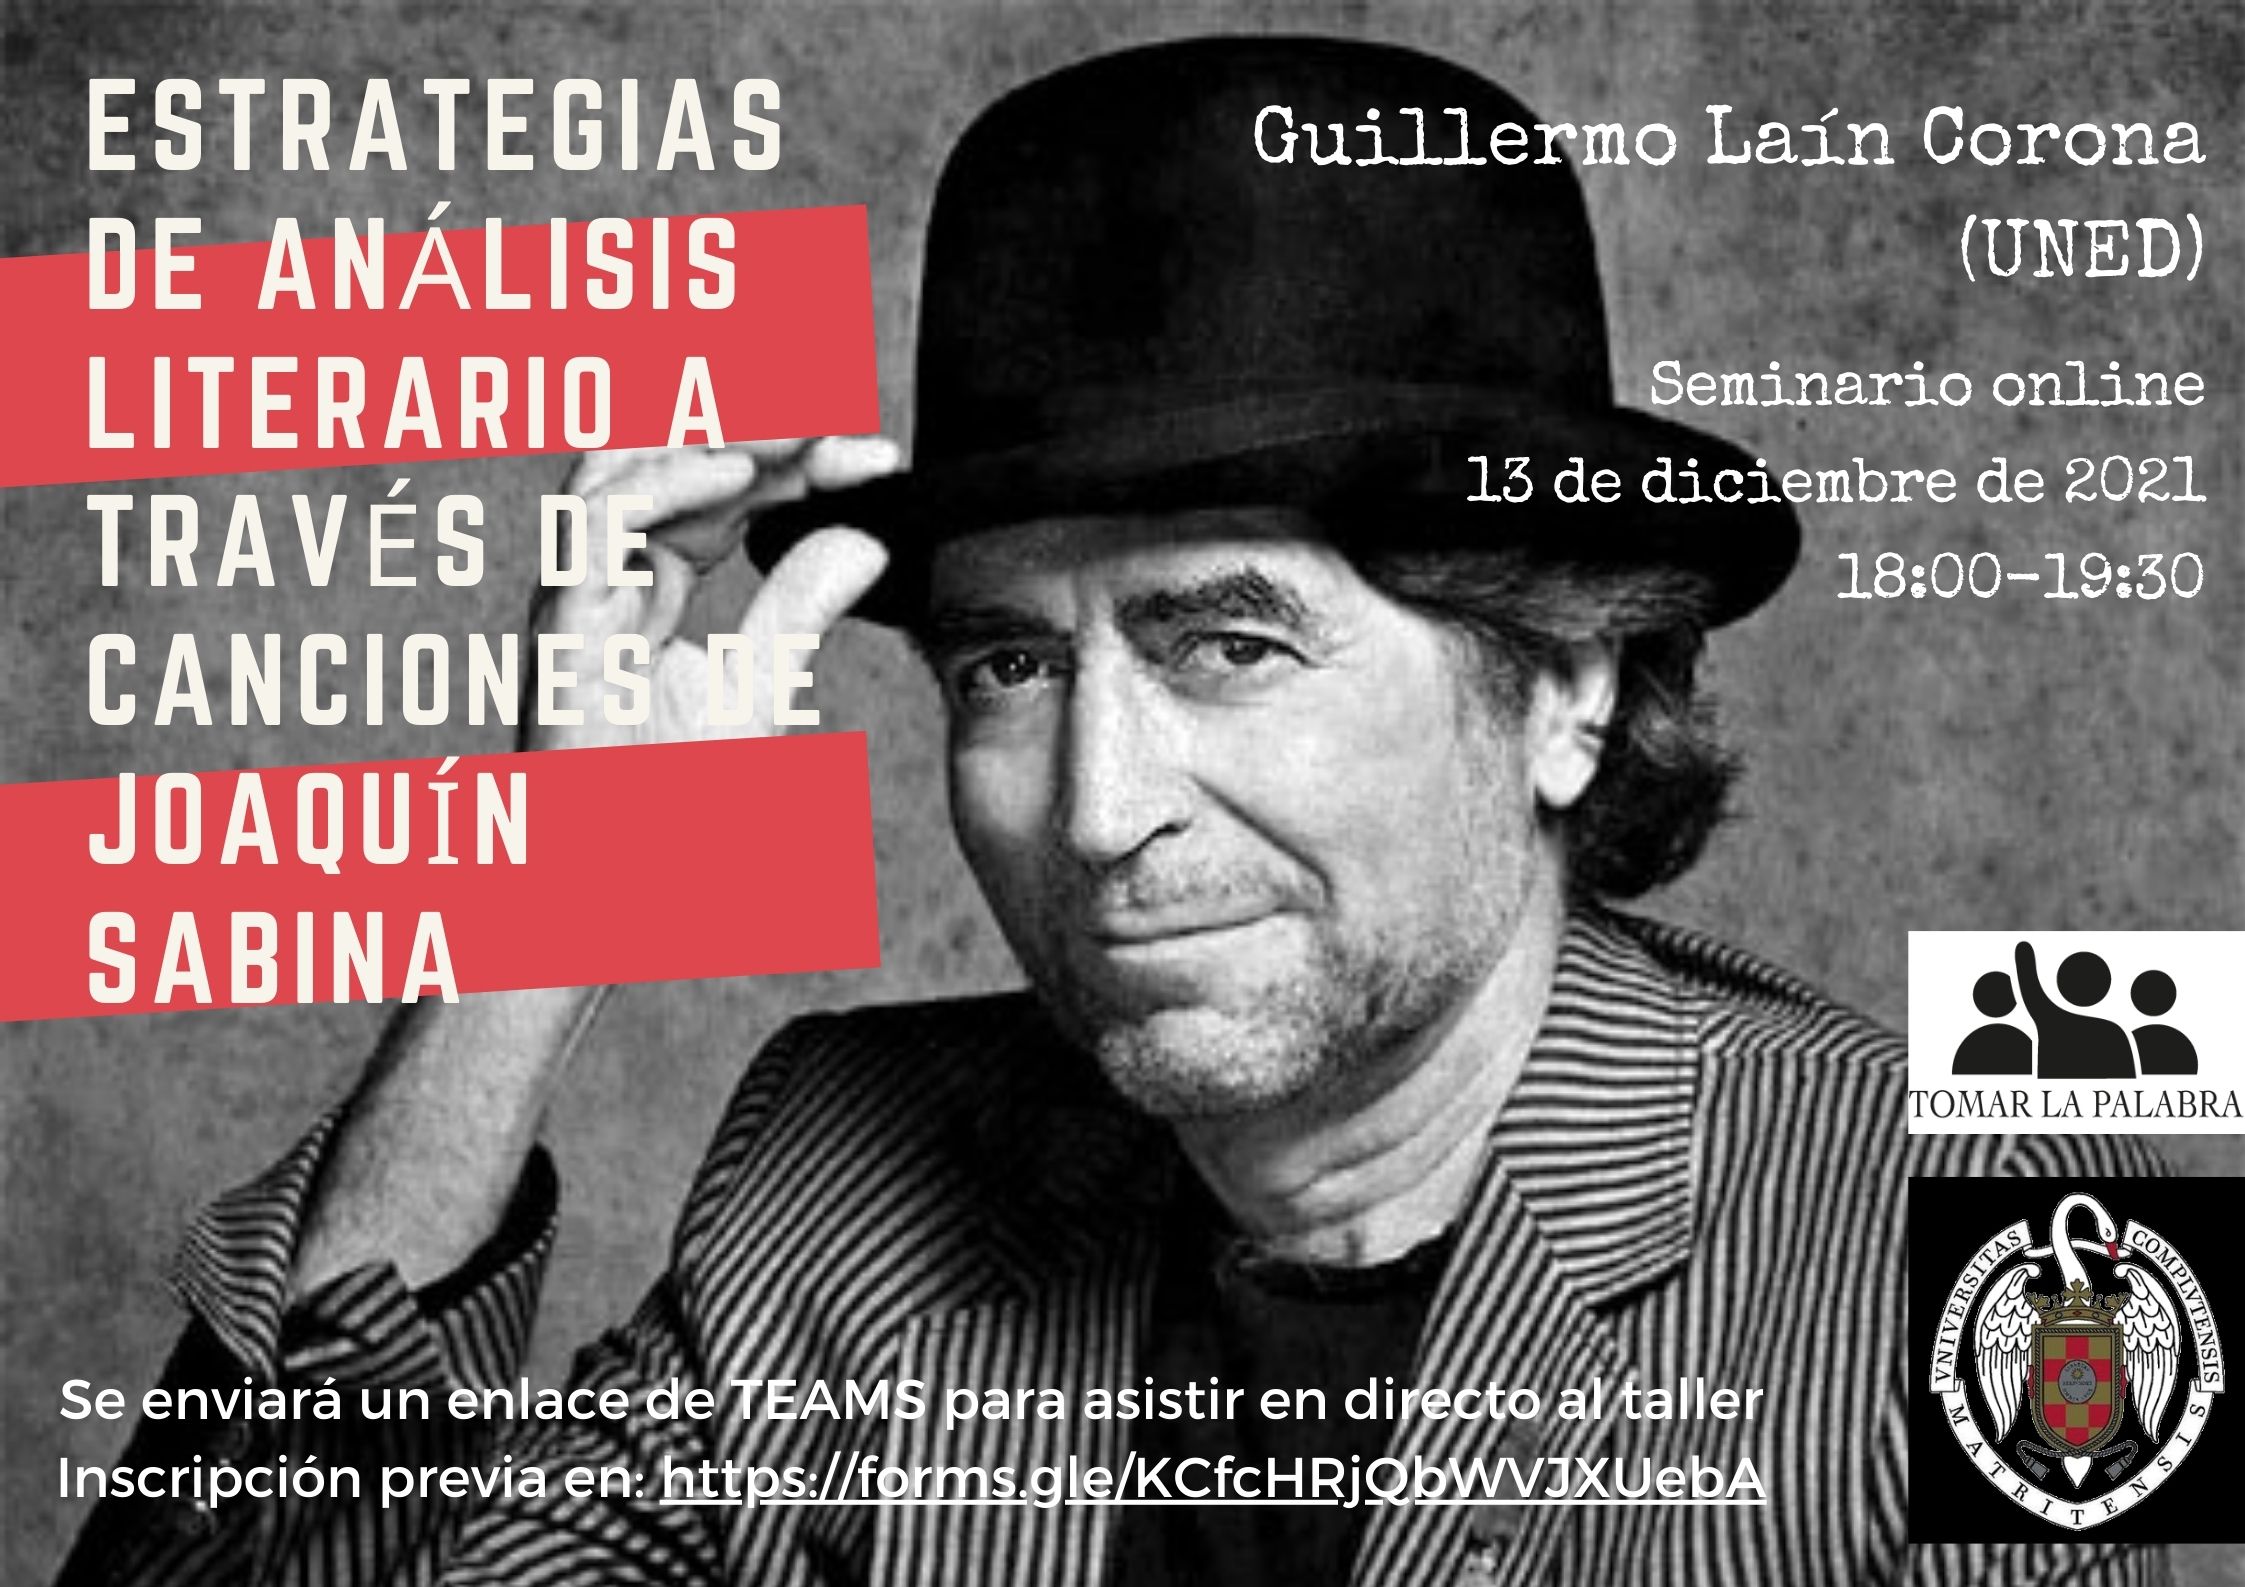 Guillermo Laín Corona, "Estrategias de análisis literario a través de canciones de Joaquín Sabina" - 1